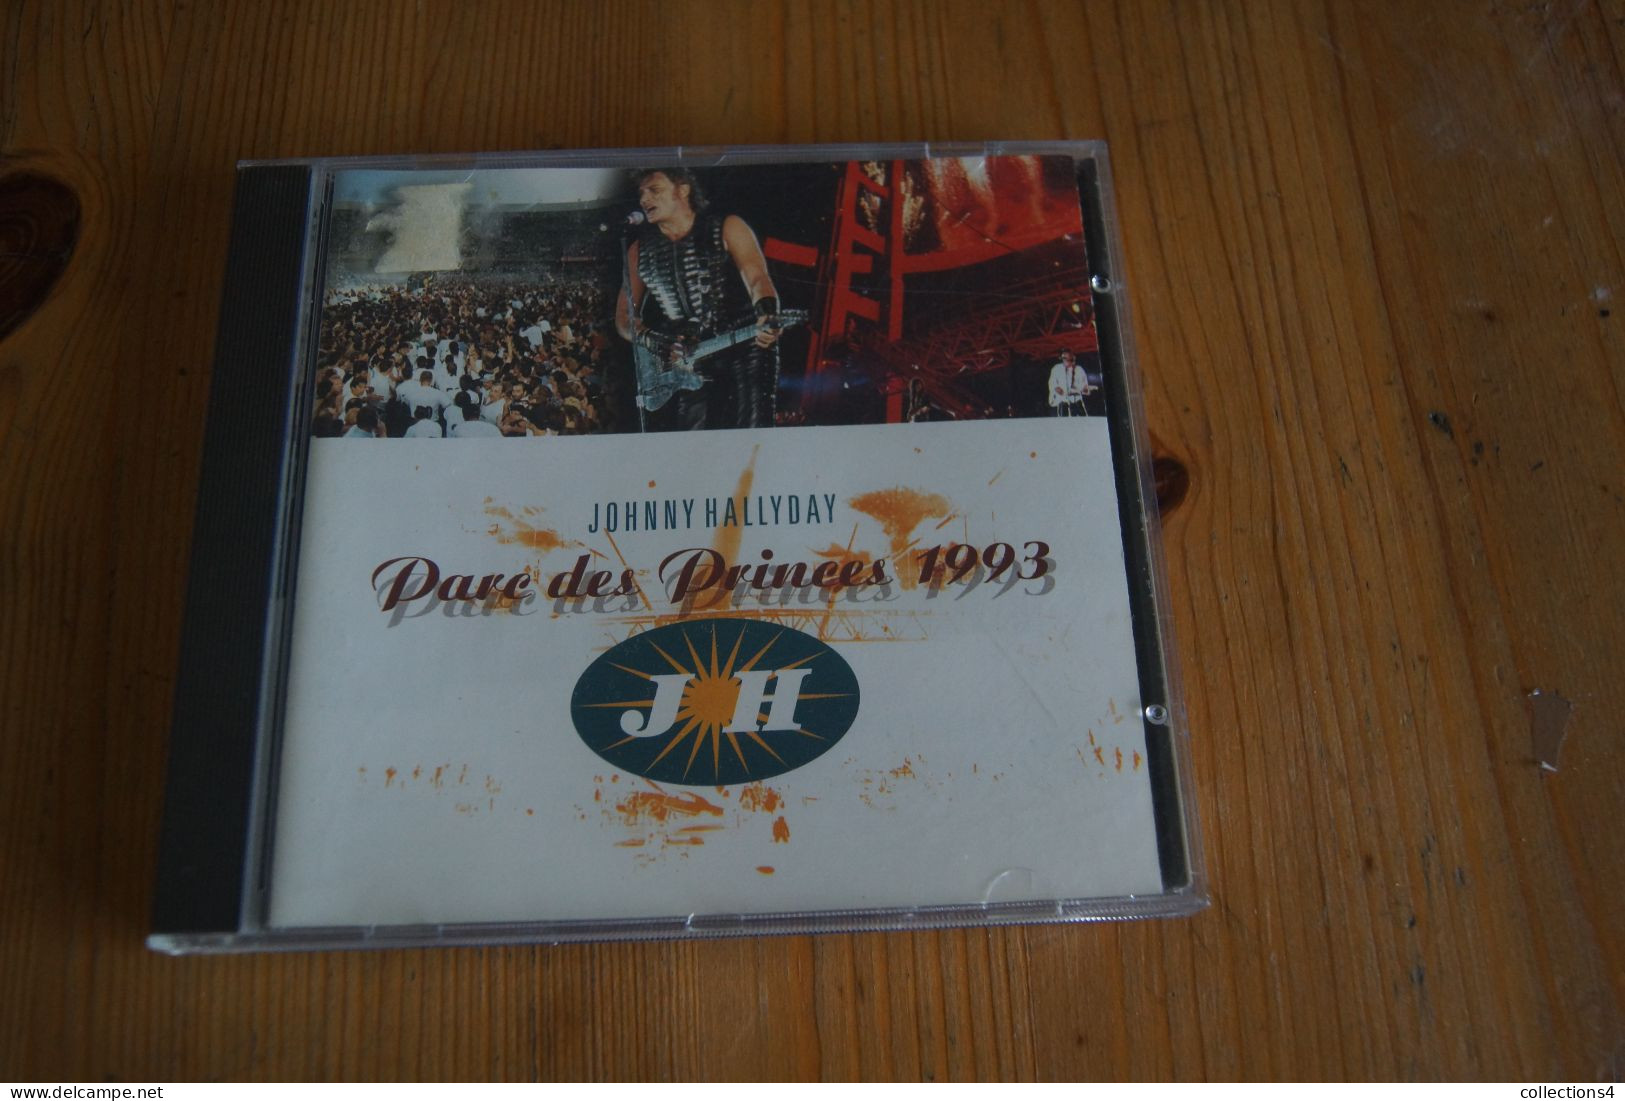 JOHNNY HALLYDAY PARC DES PRINCES 1993 CD  SORTIE 1993 - Rock